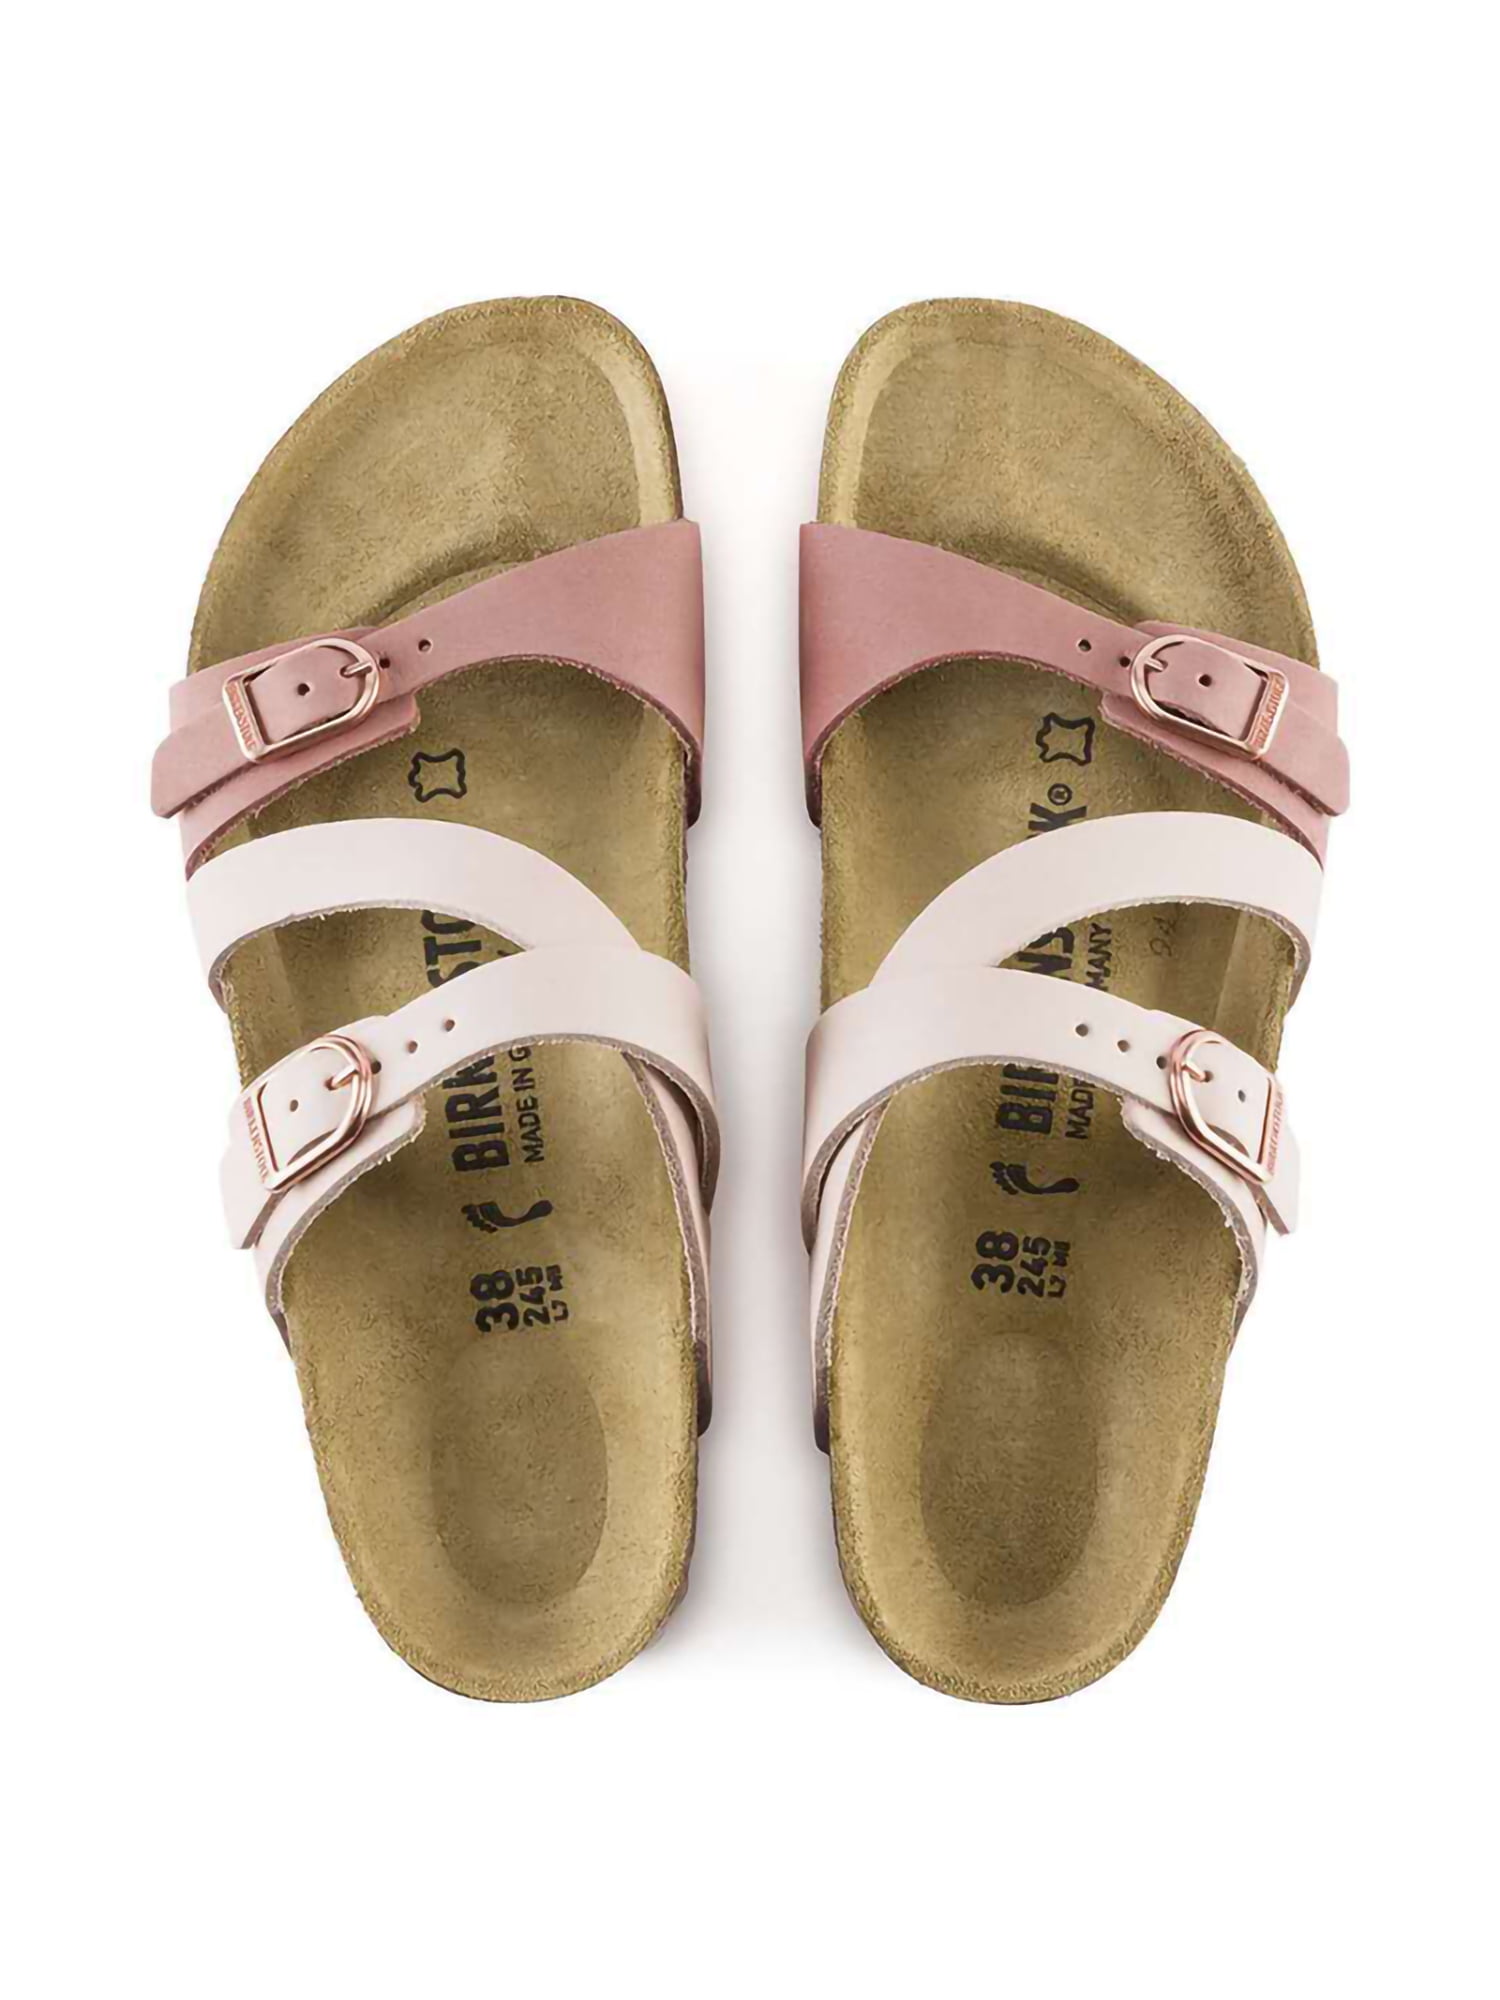 Women's Buckle T-Strap Cork Slide Footbed Platform Flip Flop Shoes Sandals New